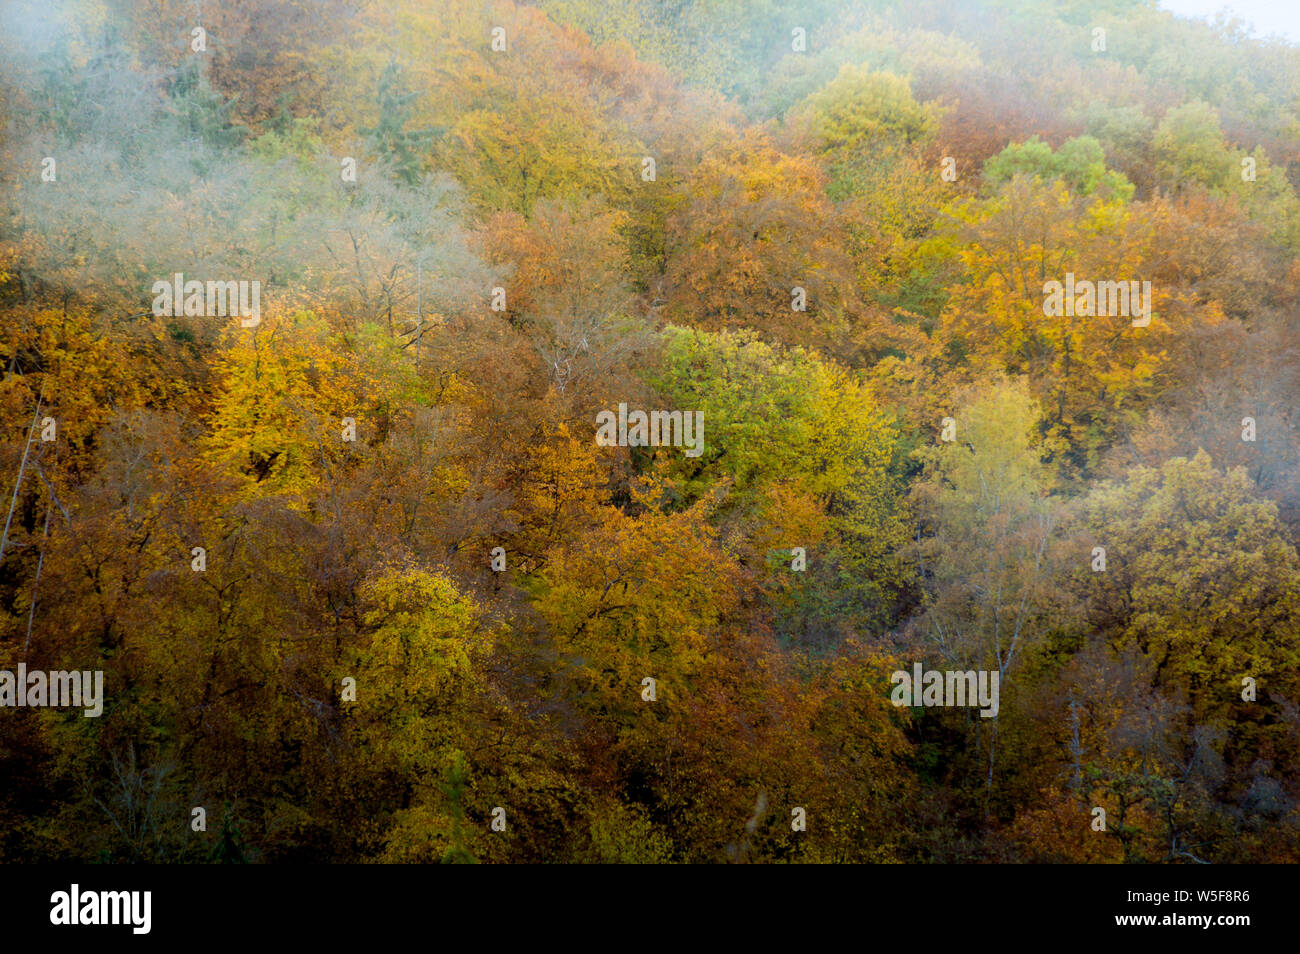 Changer de couleurs d'automne dans les arbres forestiers en Bernkastel-kues, Allemagne signifie lele concept de Changement et continuité de la vie Banque D'Images